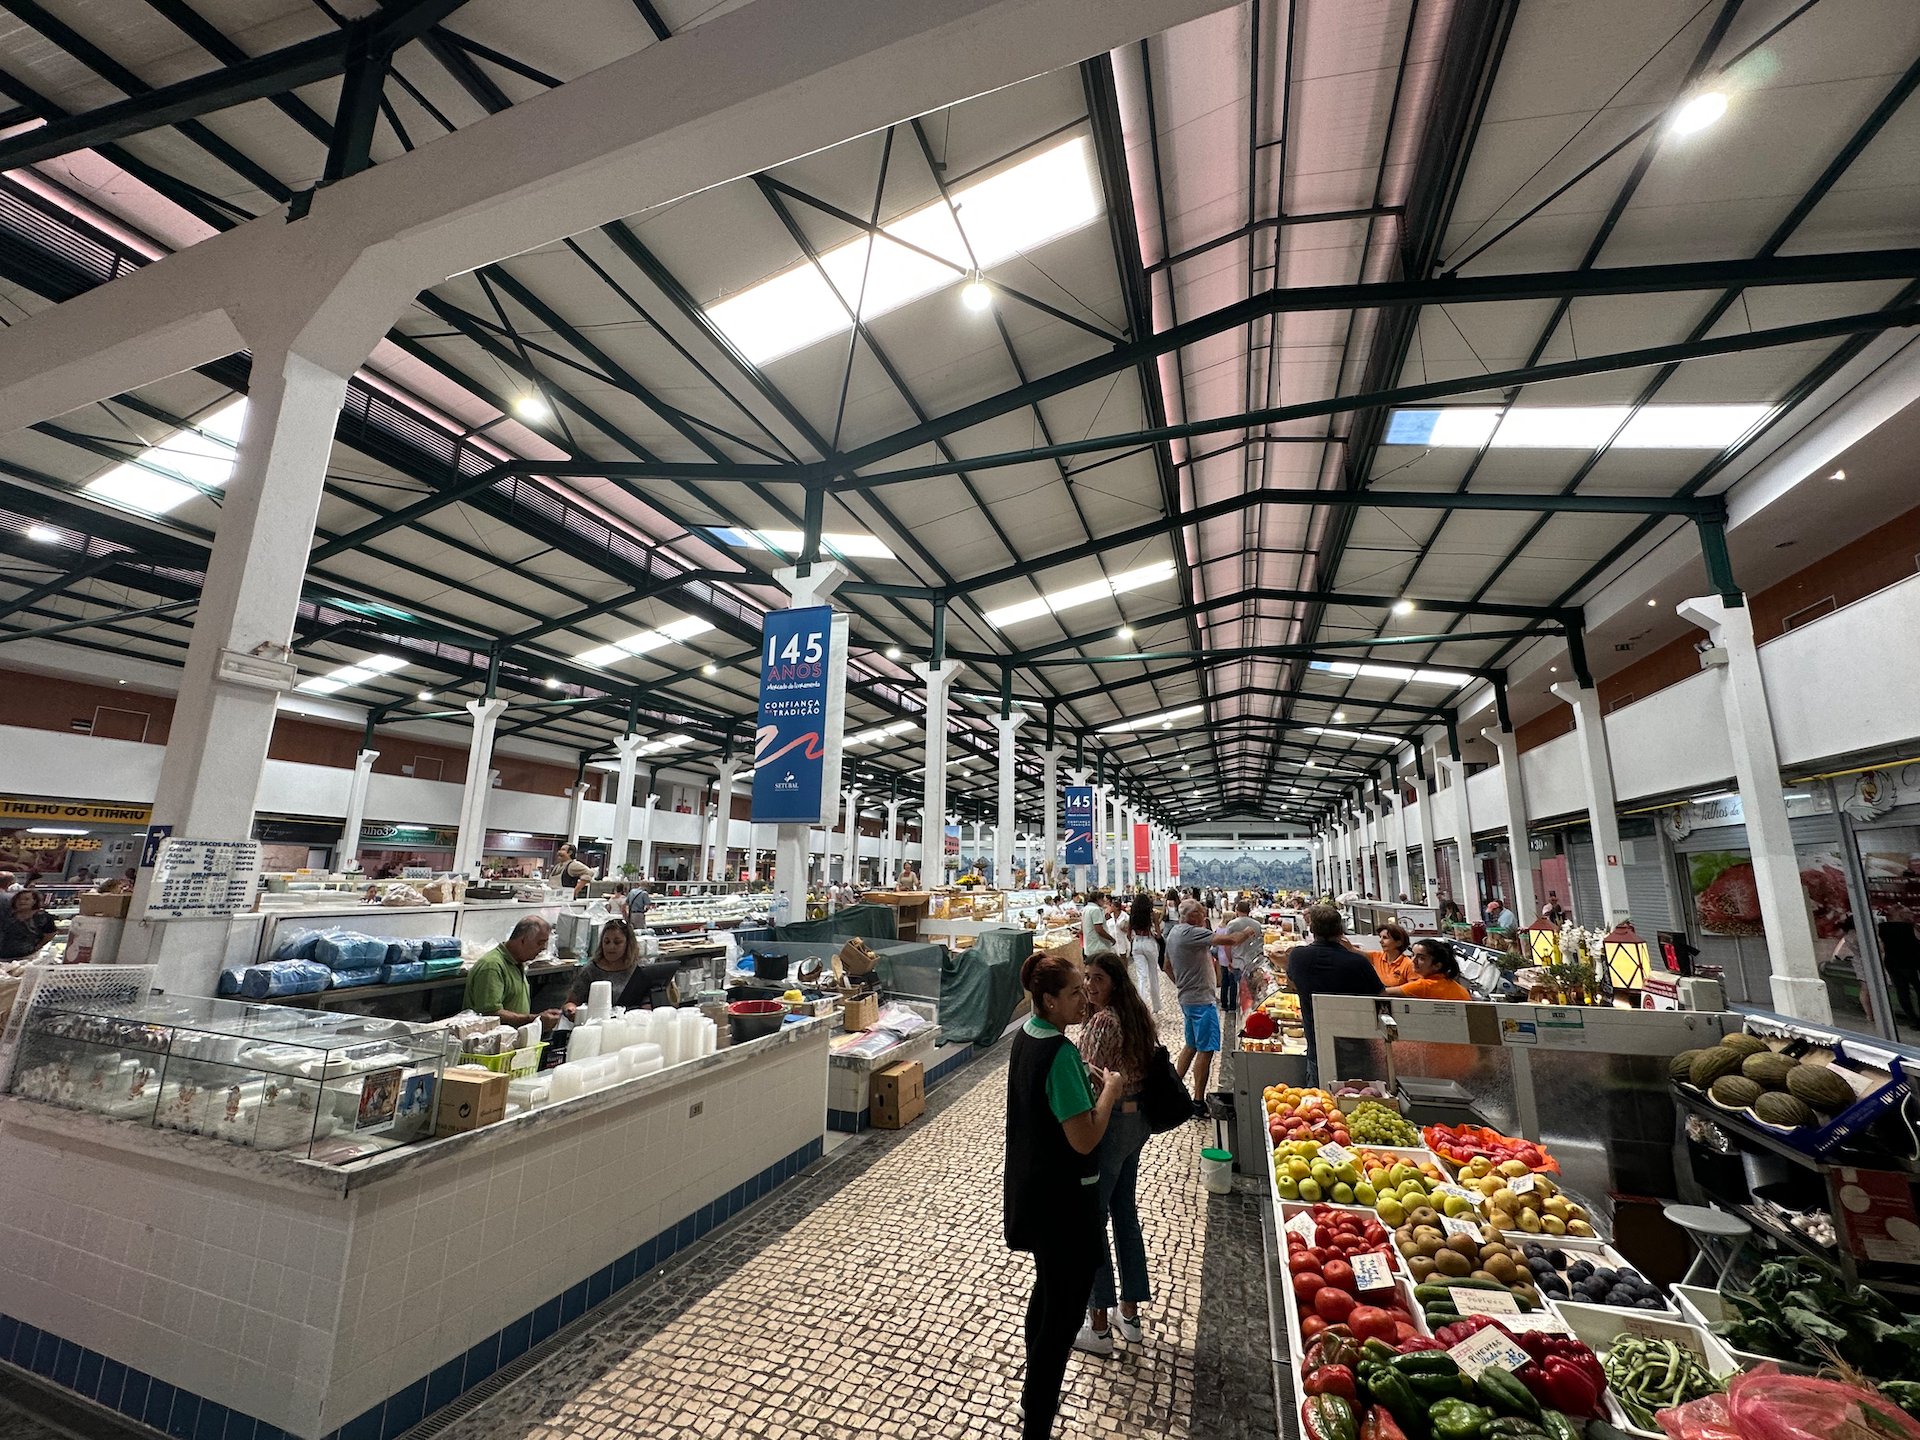  Inside the market in Setubal. 